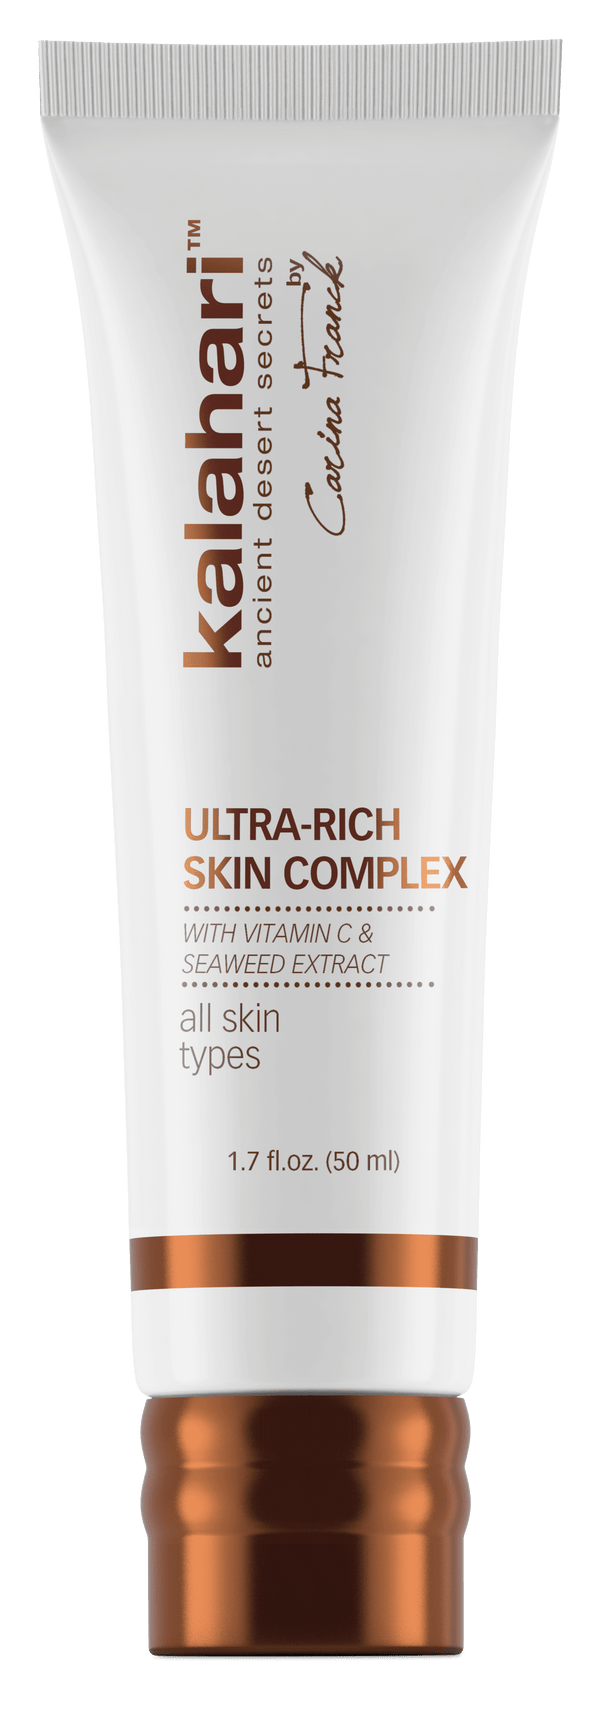 Ultra rich skin complex